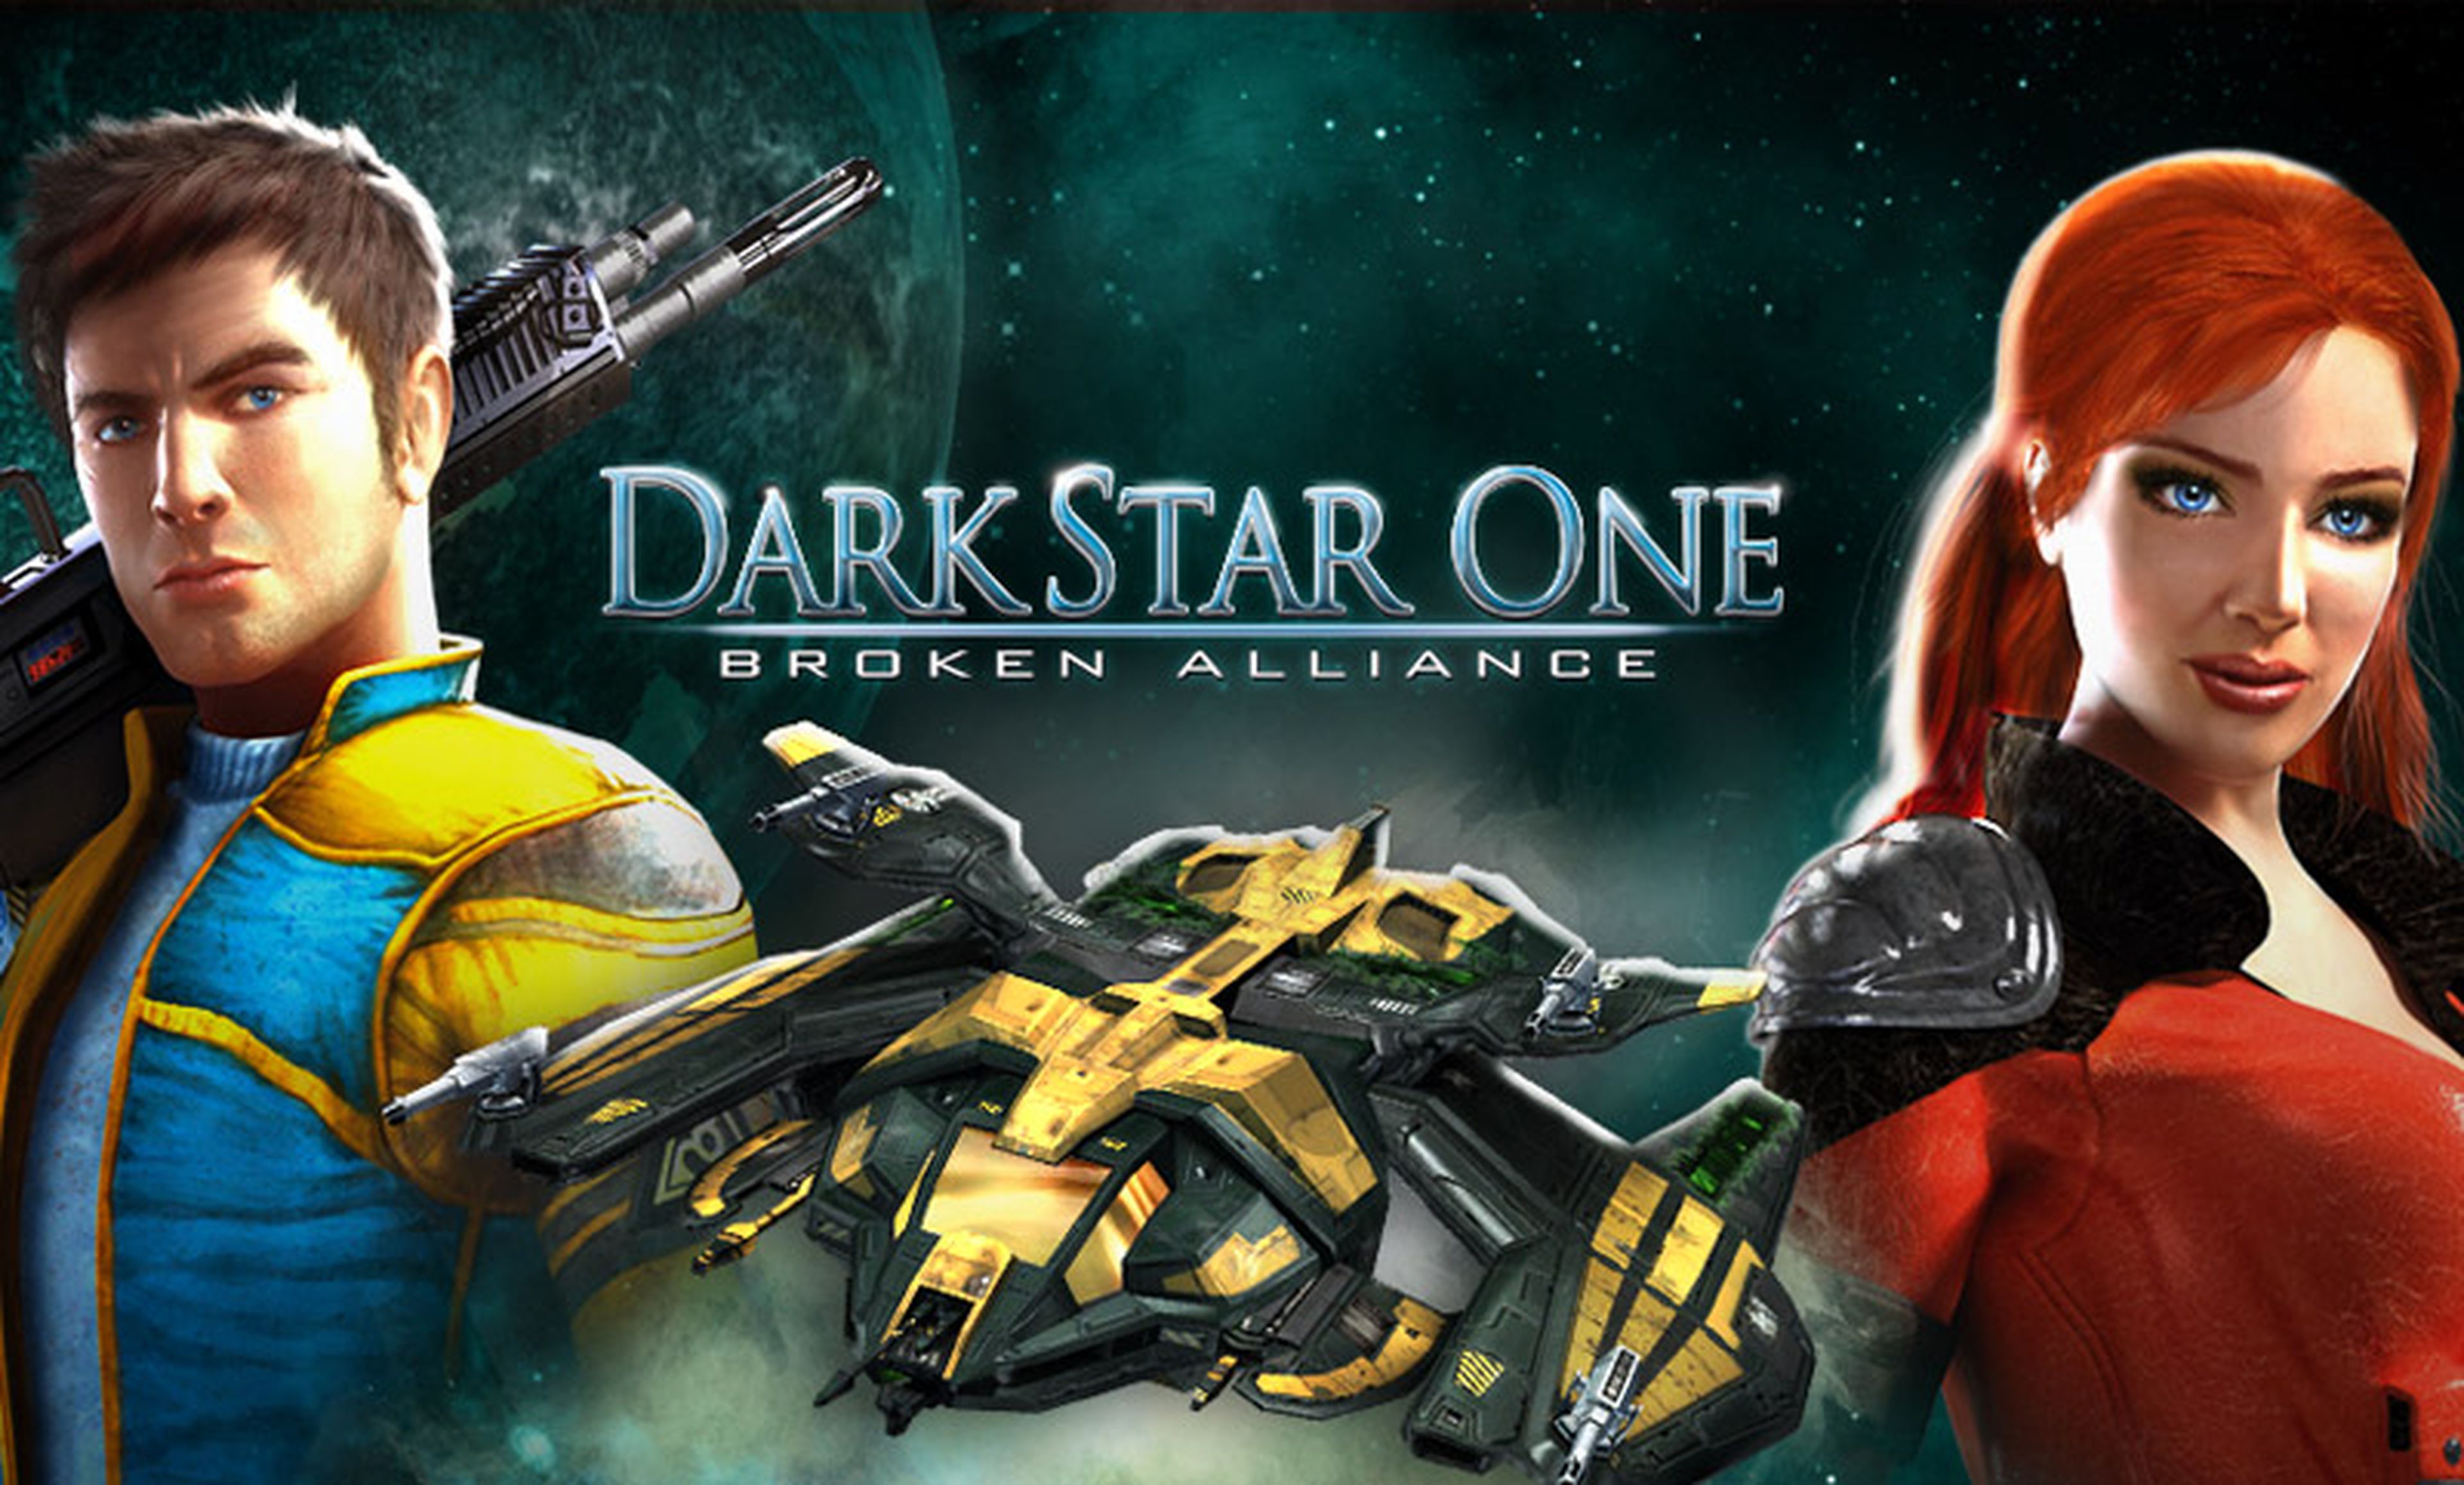 DarkStar One despega en Xbox 360